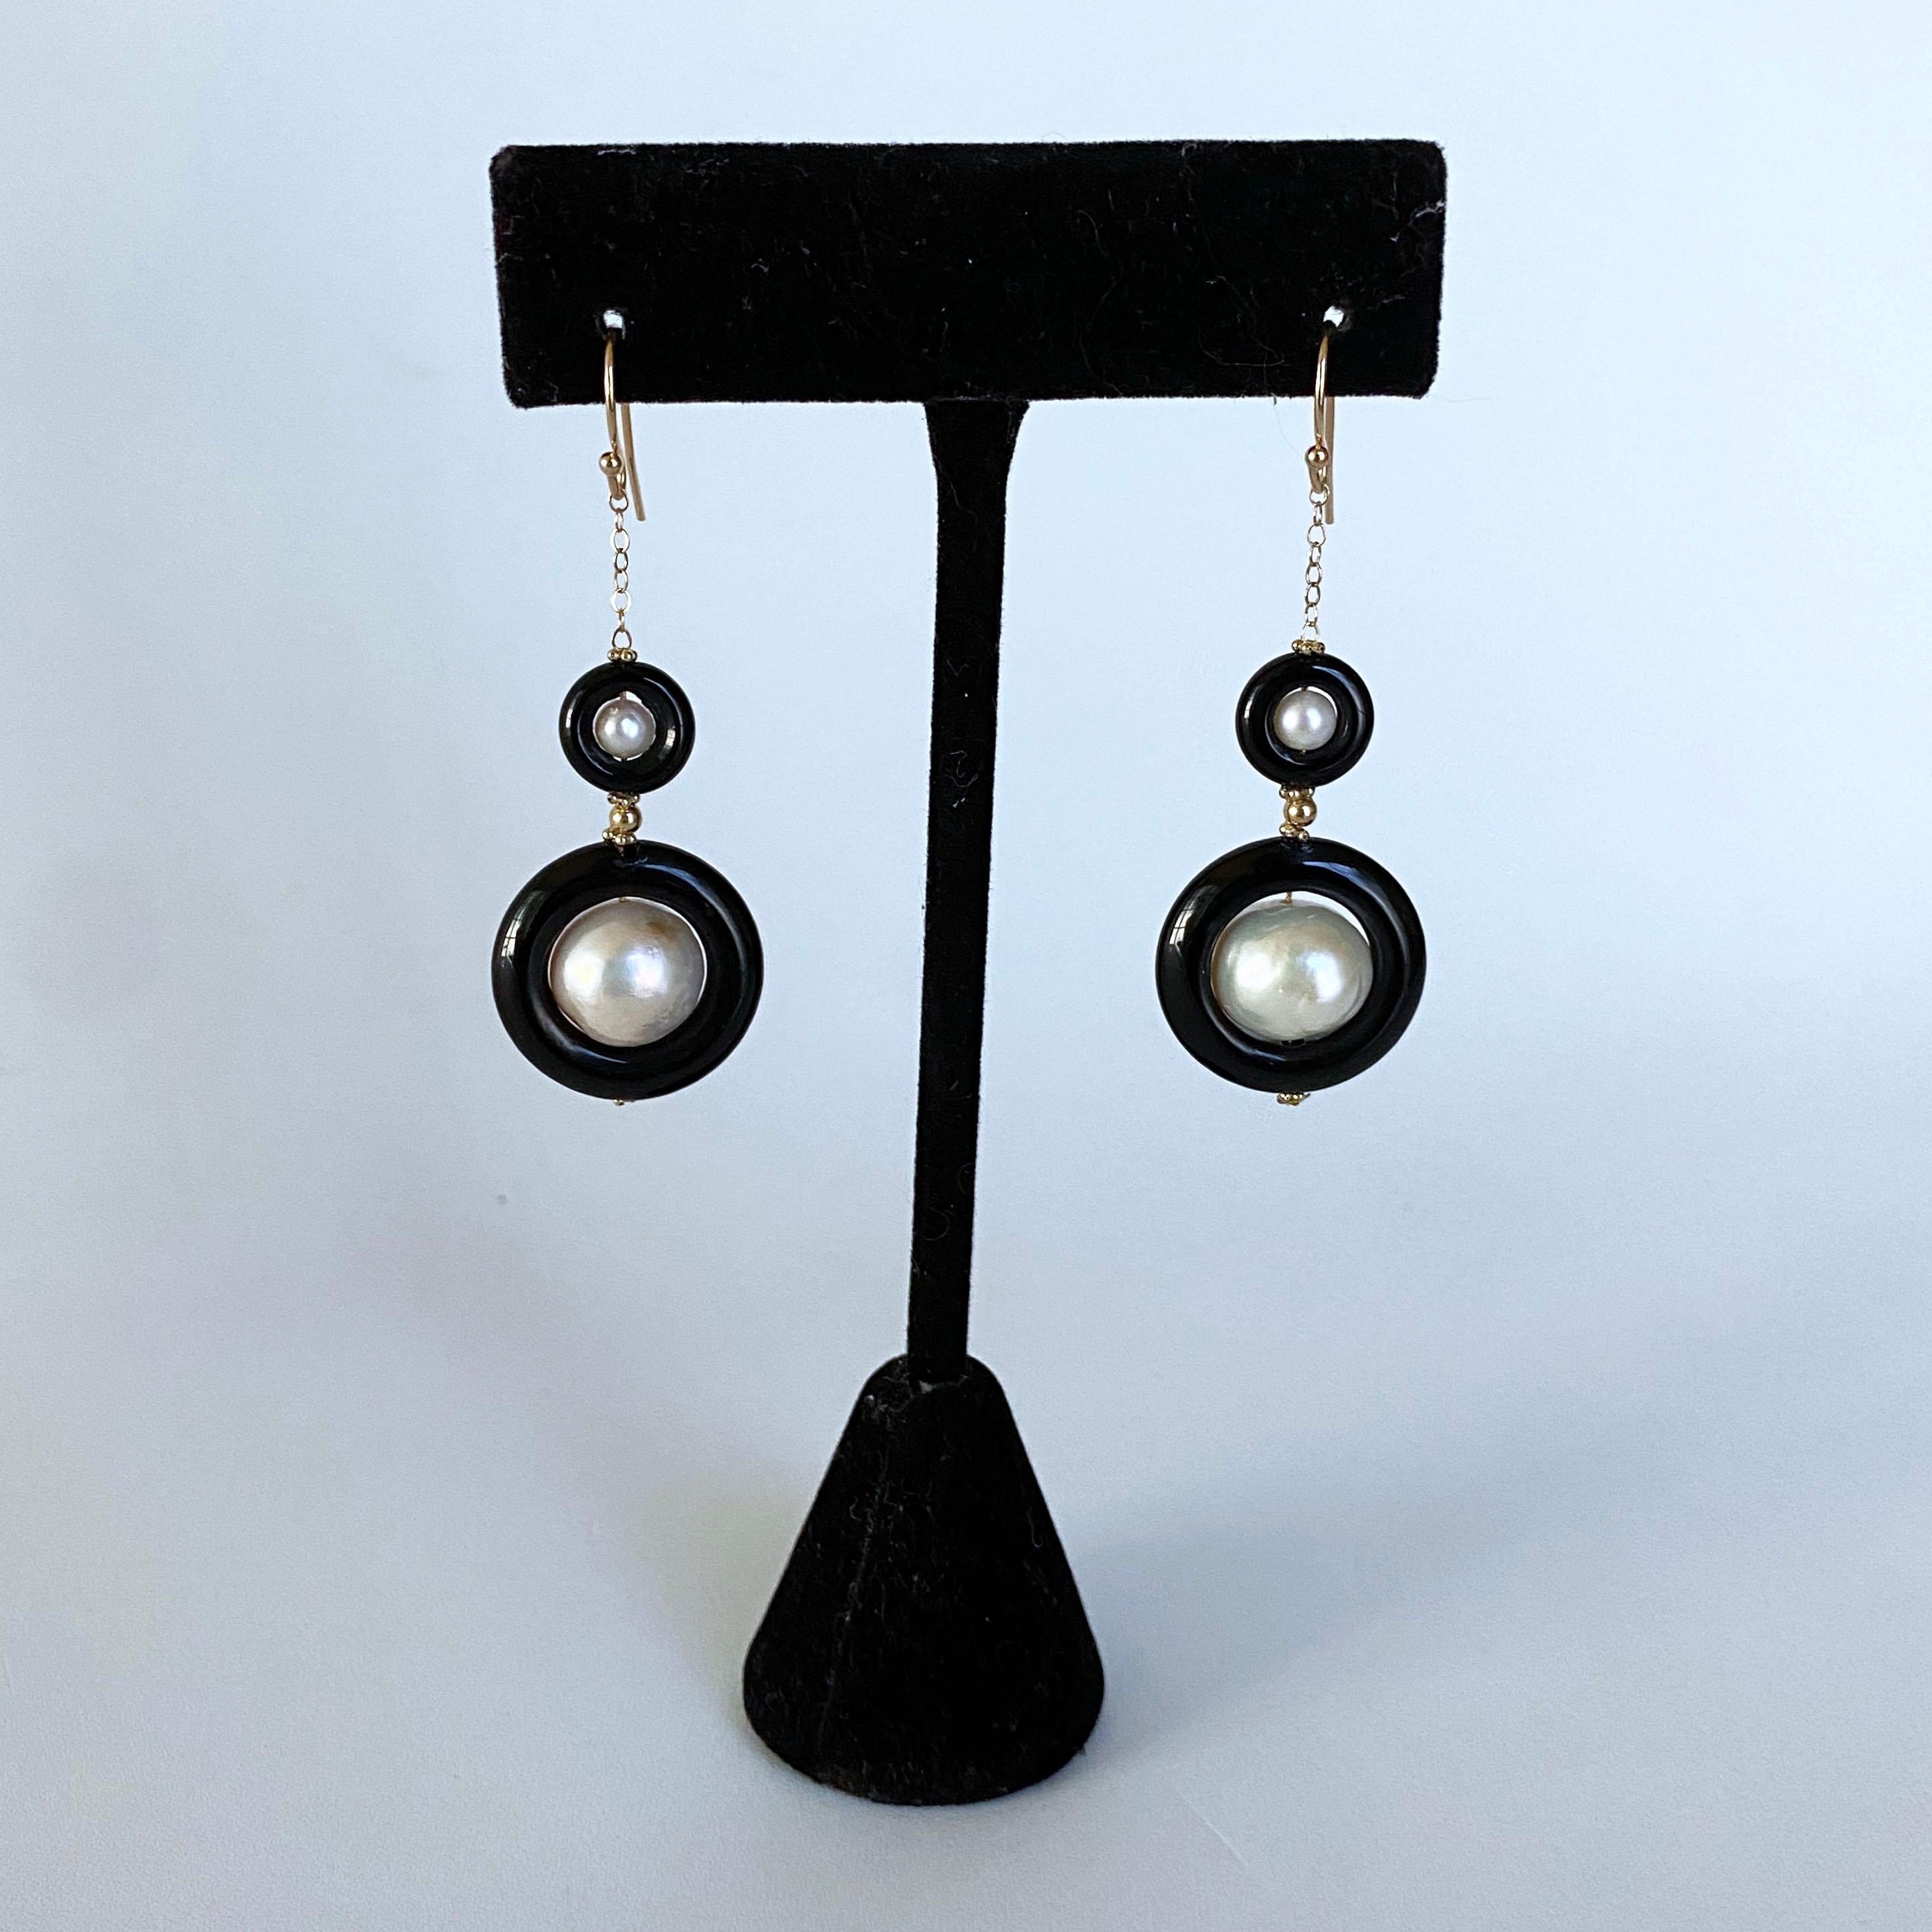 Une magnifique paire de boucles d'oreilles de Marina J. Cet ensemble de deux perles et d'onyx noir présente des perles blanches d'une texture et d'un éclat iridescents, placées à l'intérieur de donuts d'onyx noir. La perle et l'onyx noir sont de